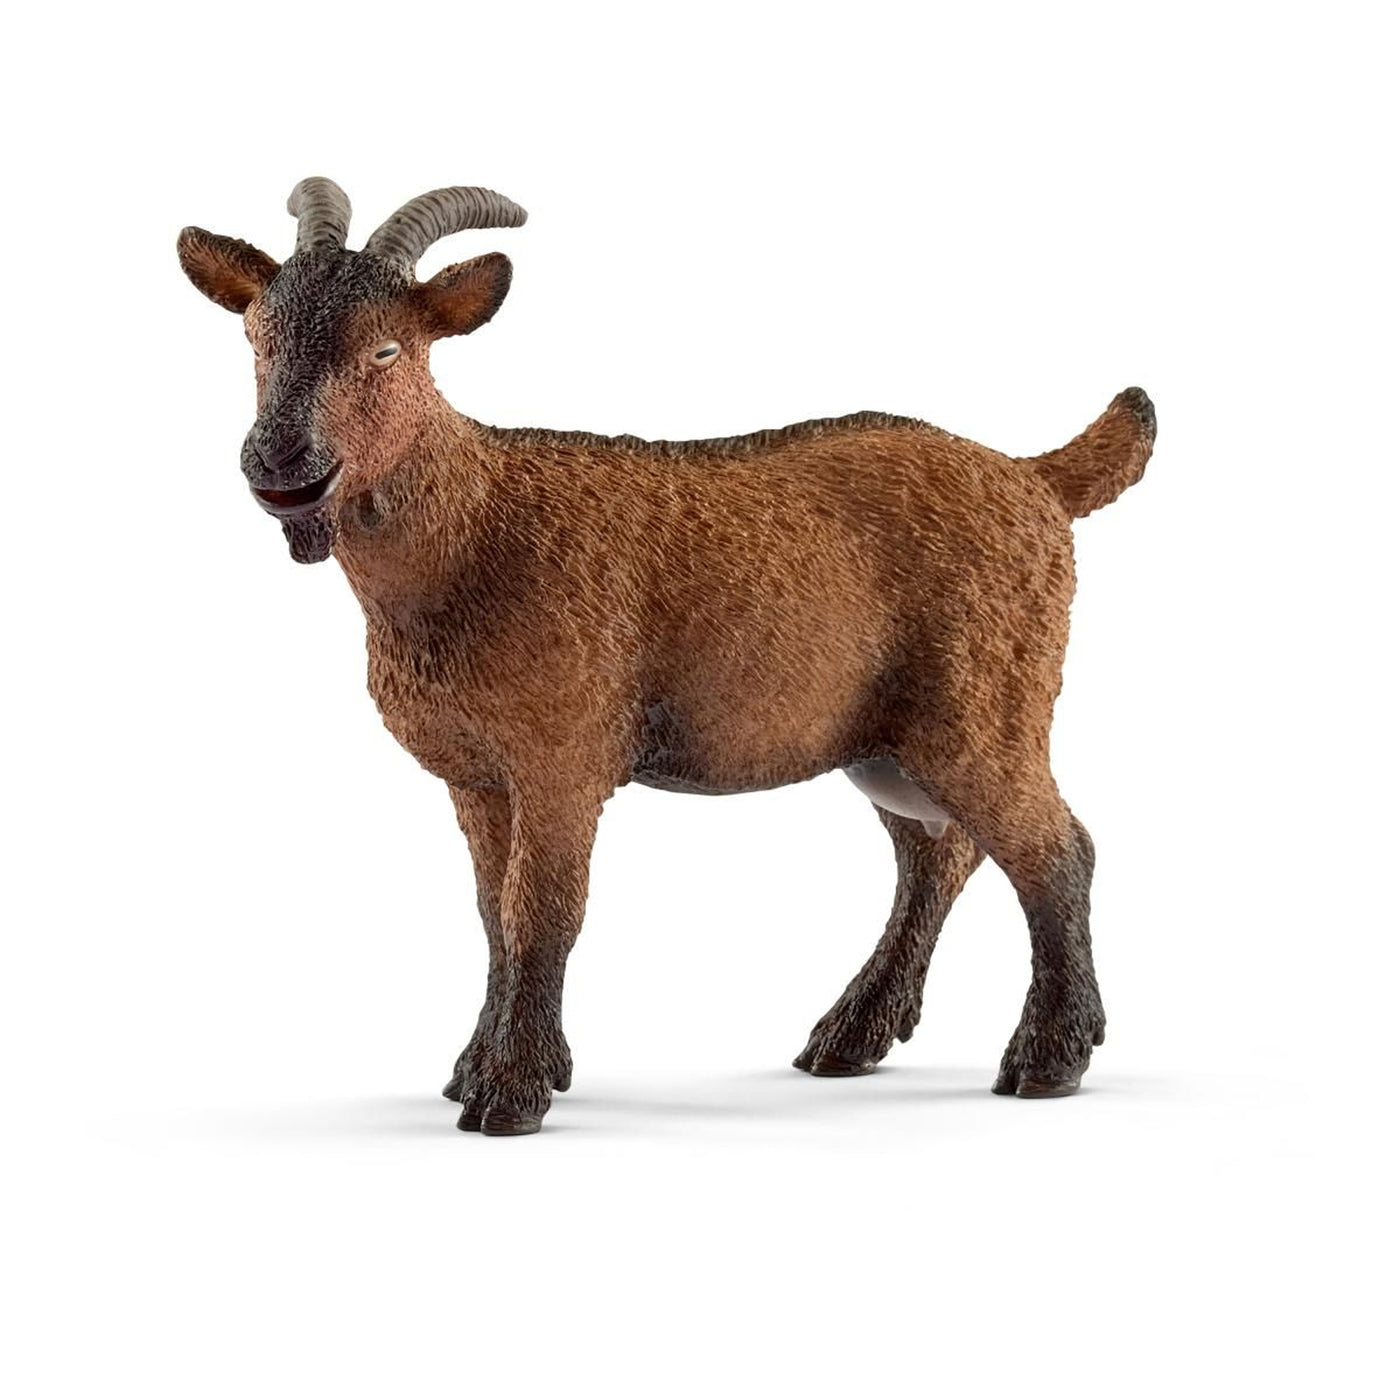 Schleich Farm World Goat Toy Figurine